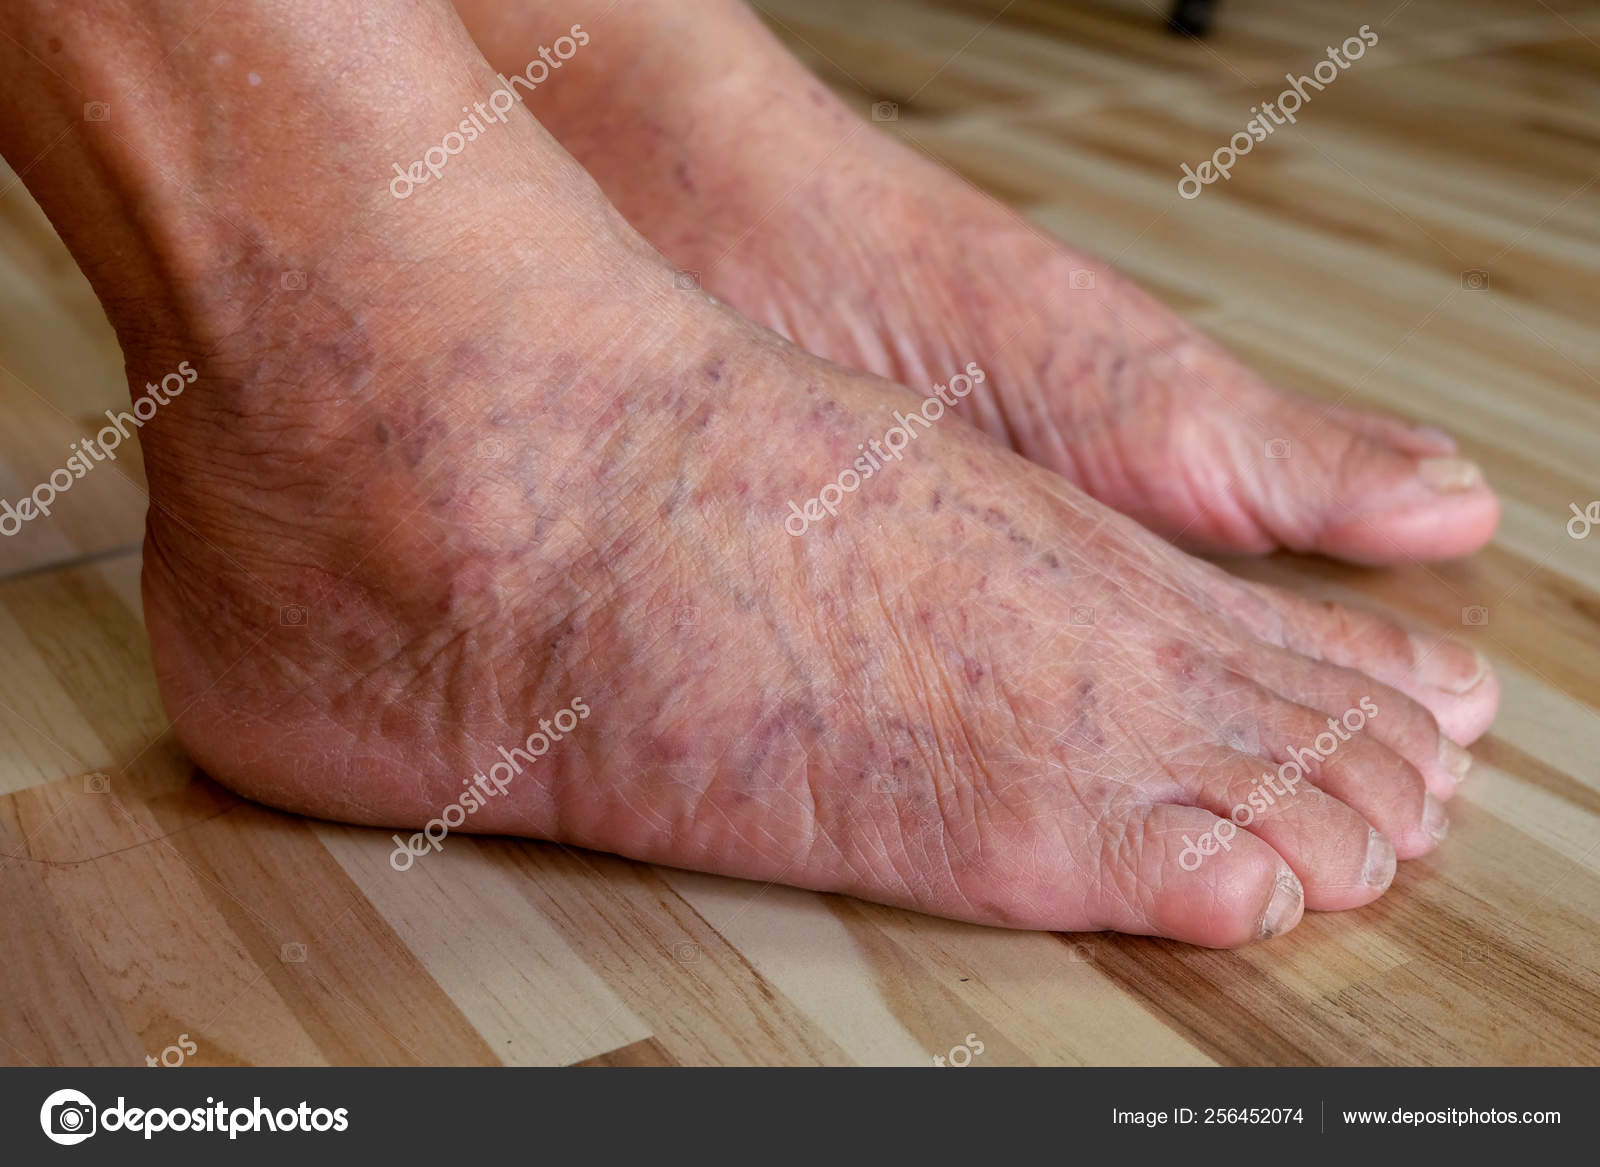 Wart on foot reflexology